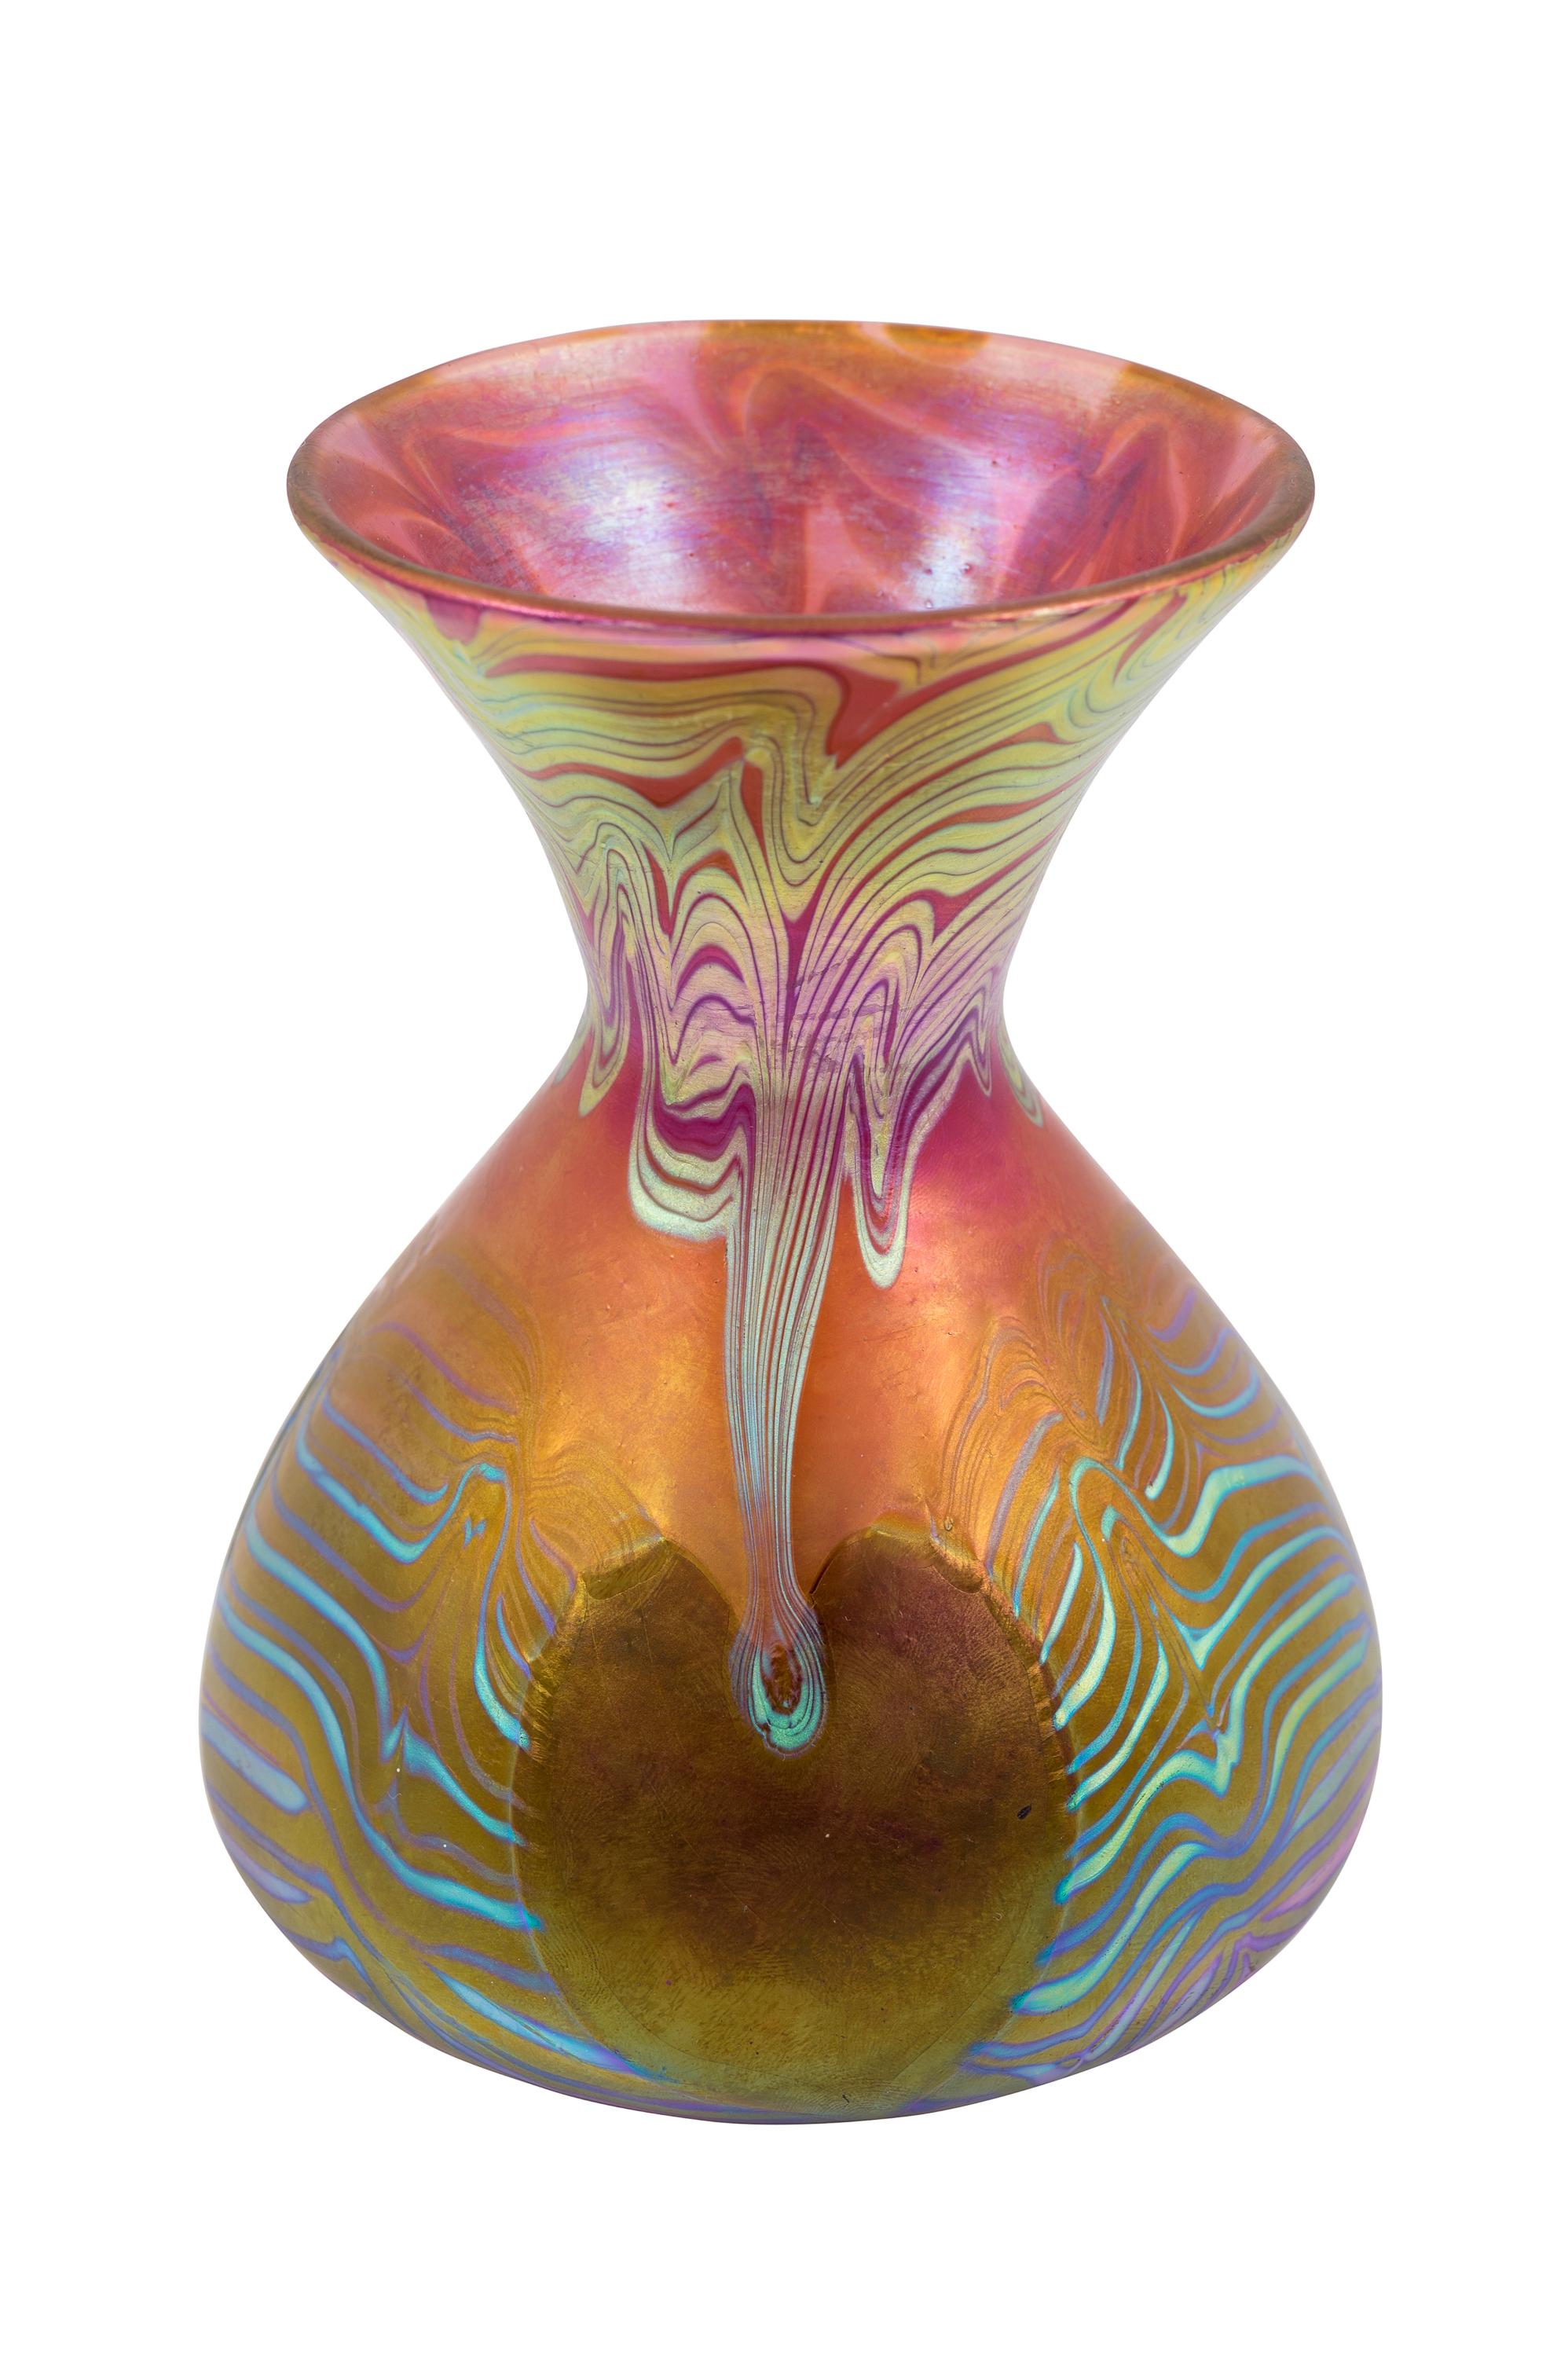 Austrian Glass Vase Loetz PG 3/492 Decoration circa 1903 Pink Green Blue Art Nouveau For Sale